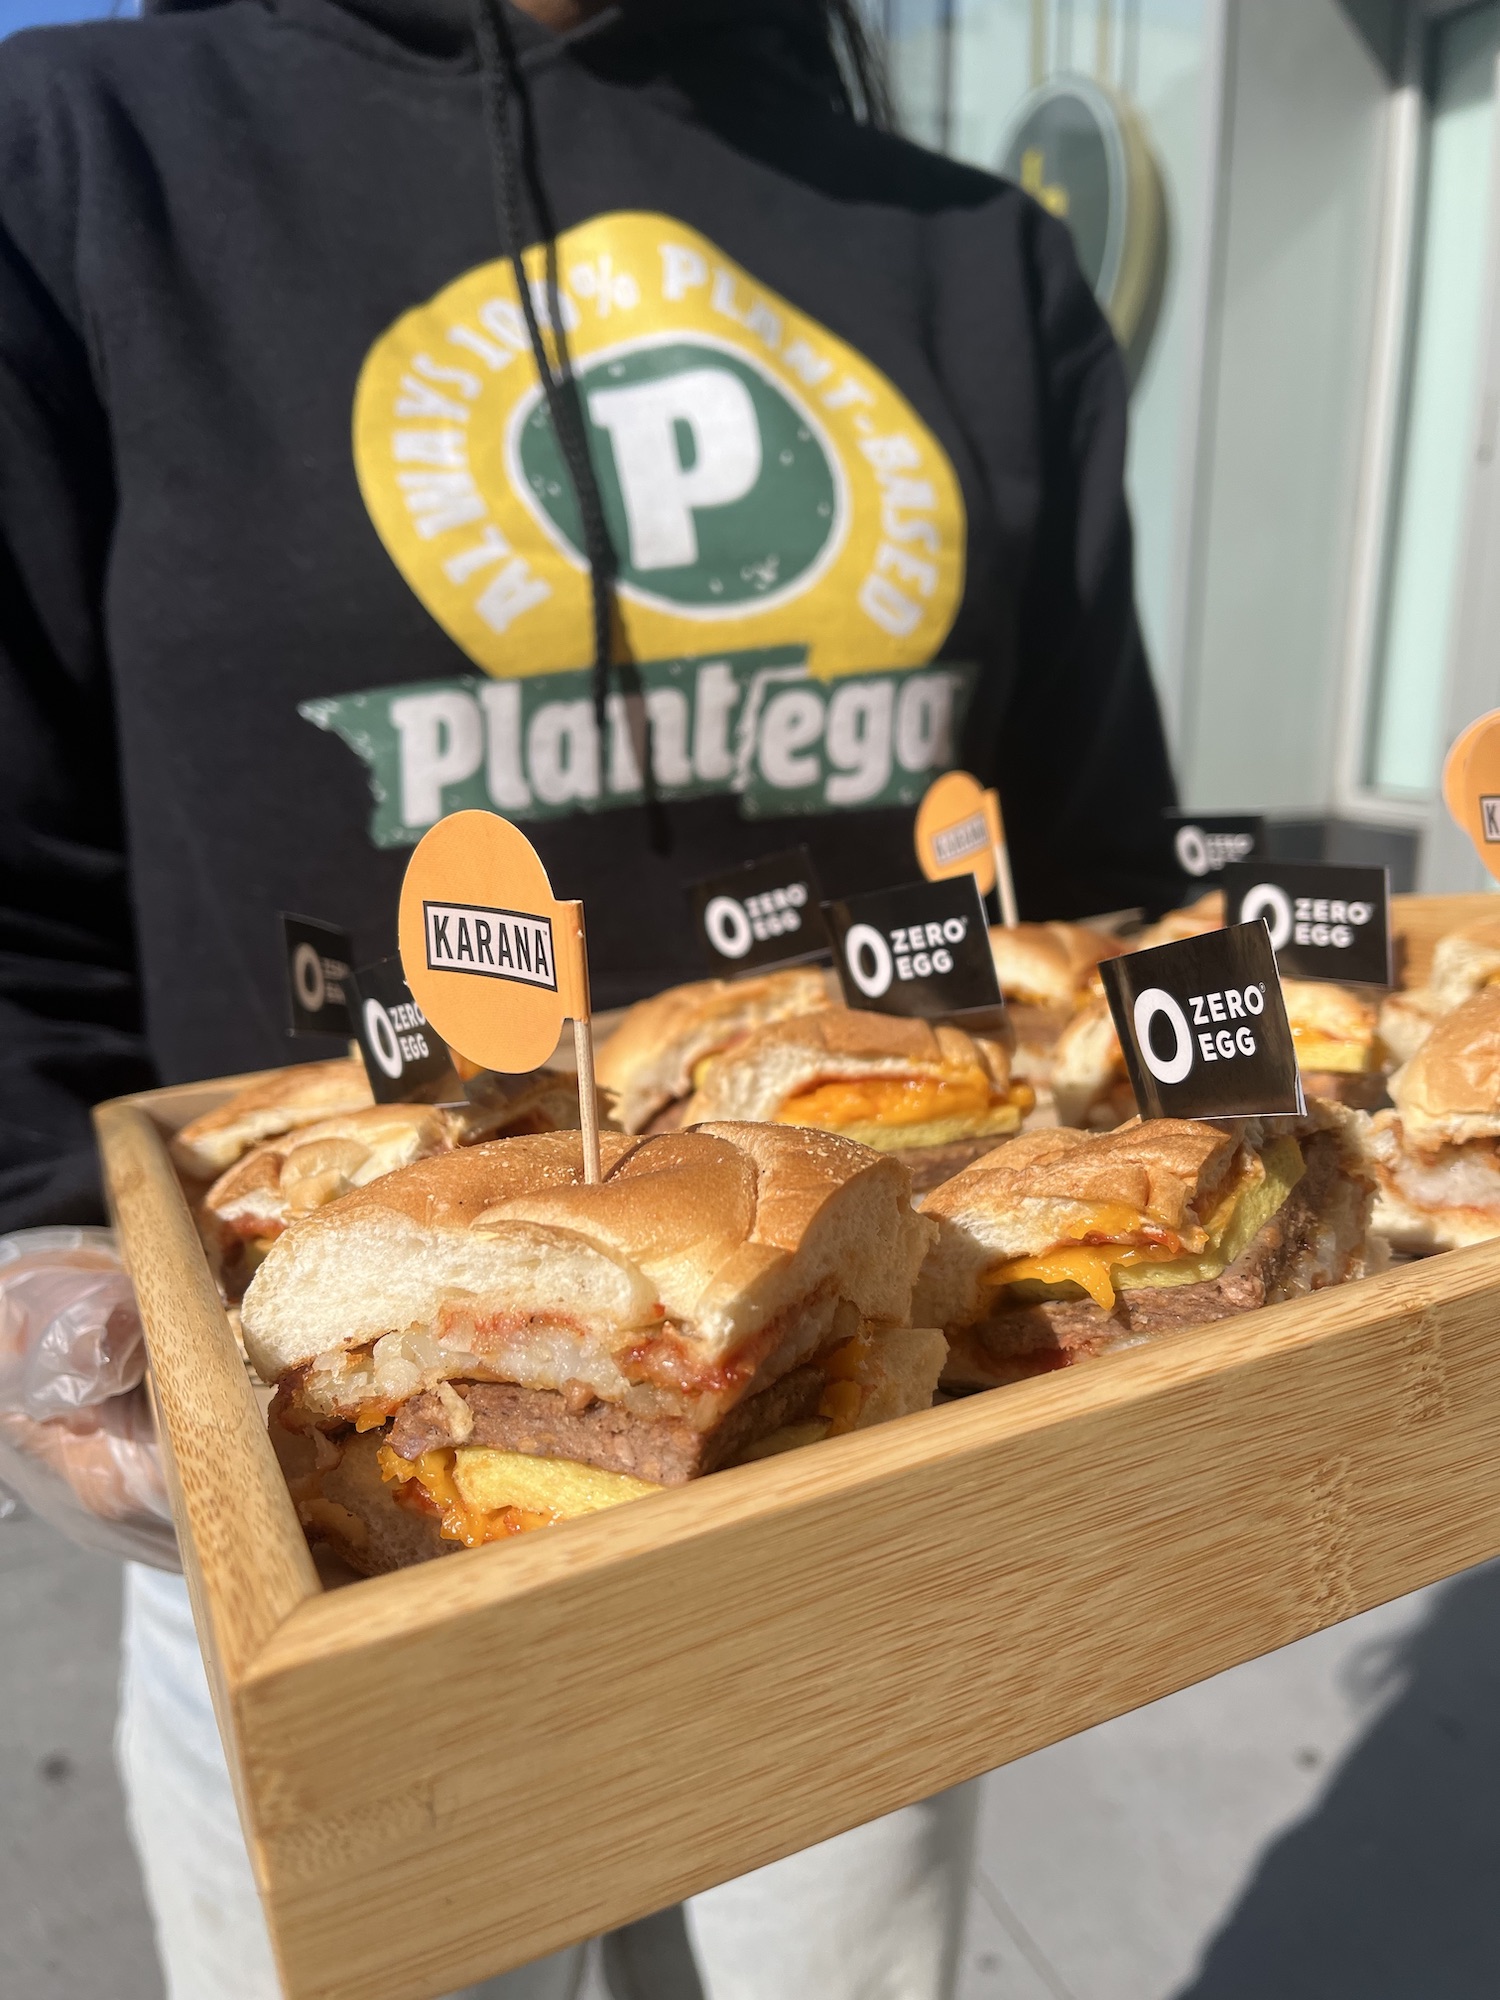 plantega plant-based sandwich samples in new york city bodegas